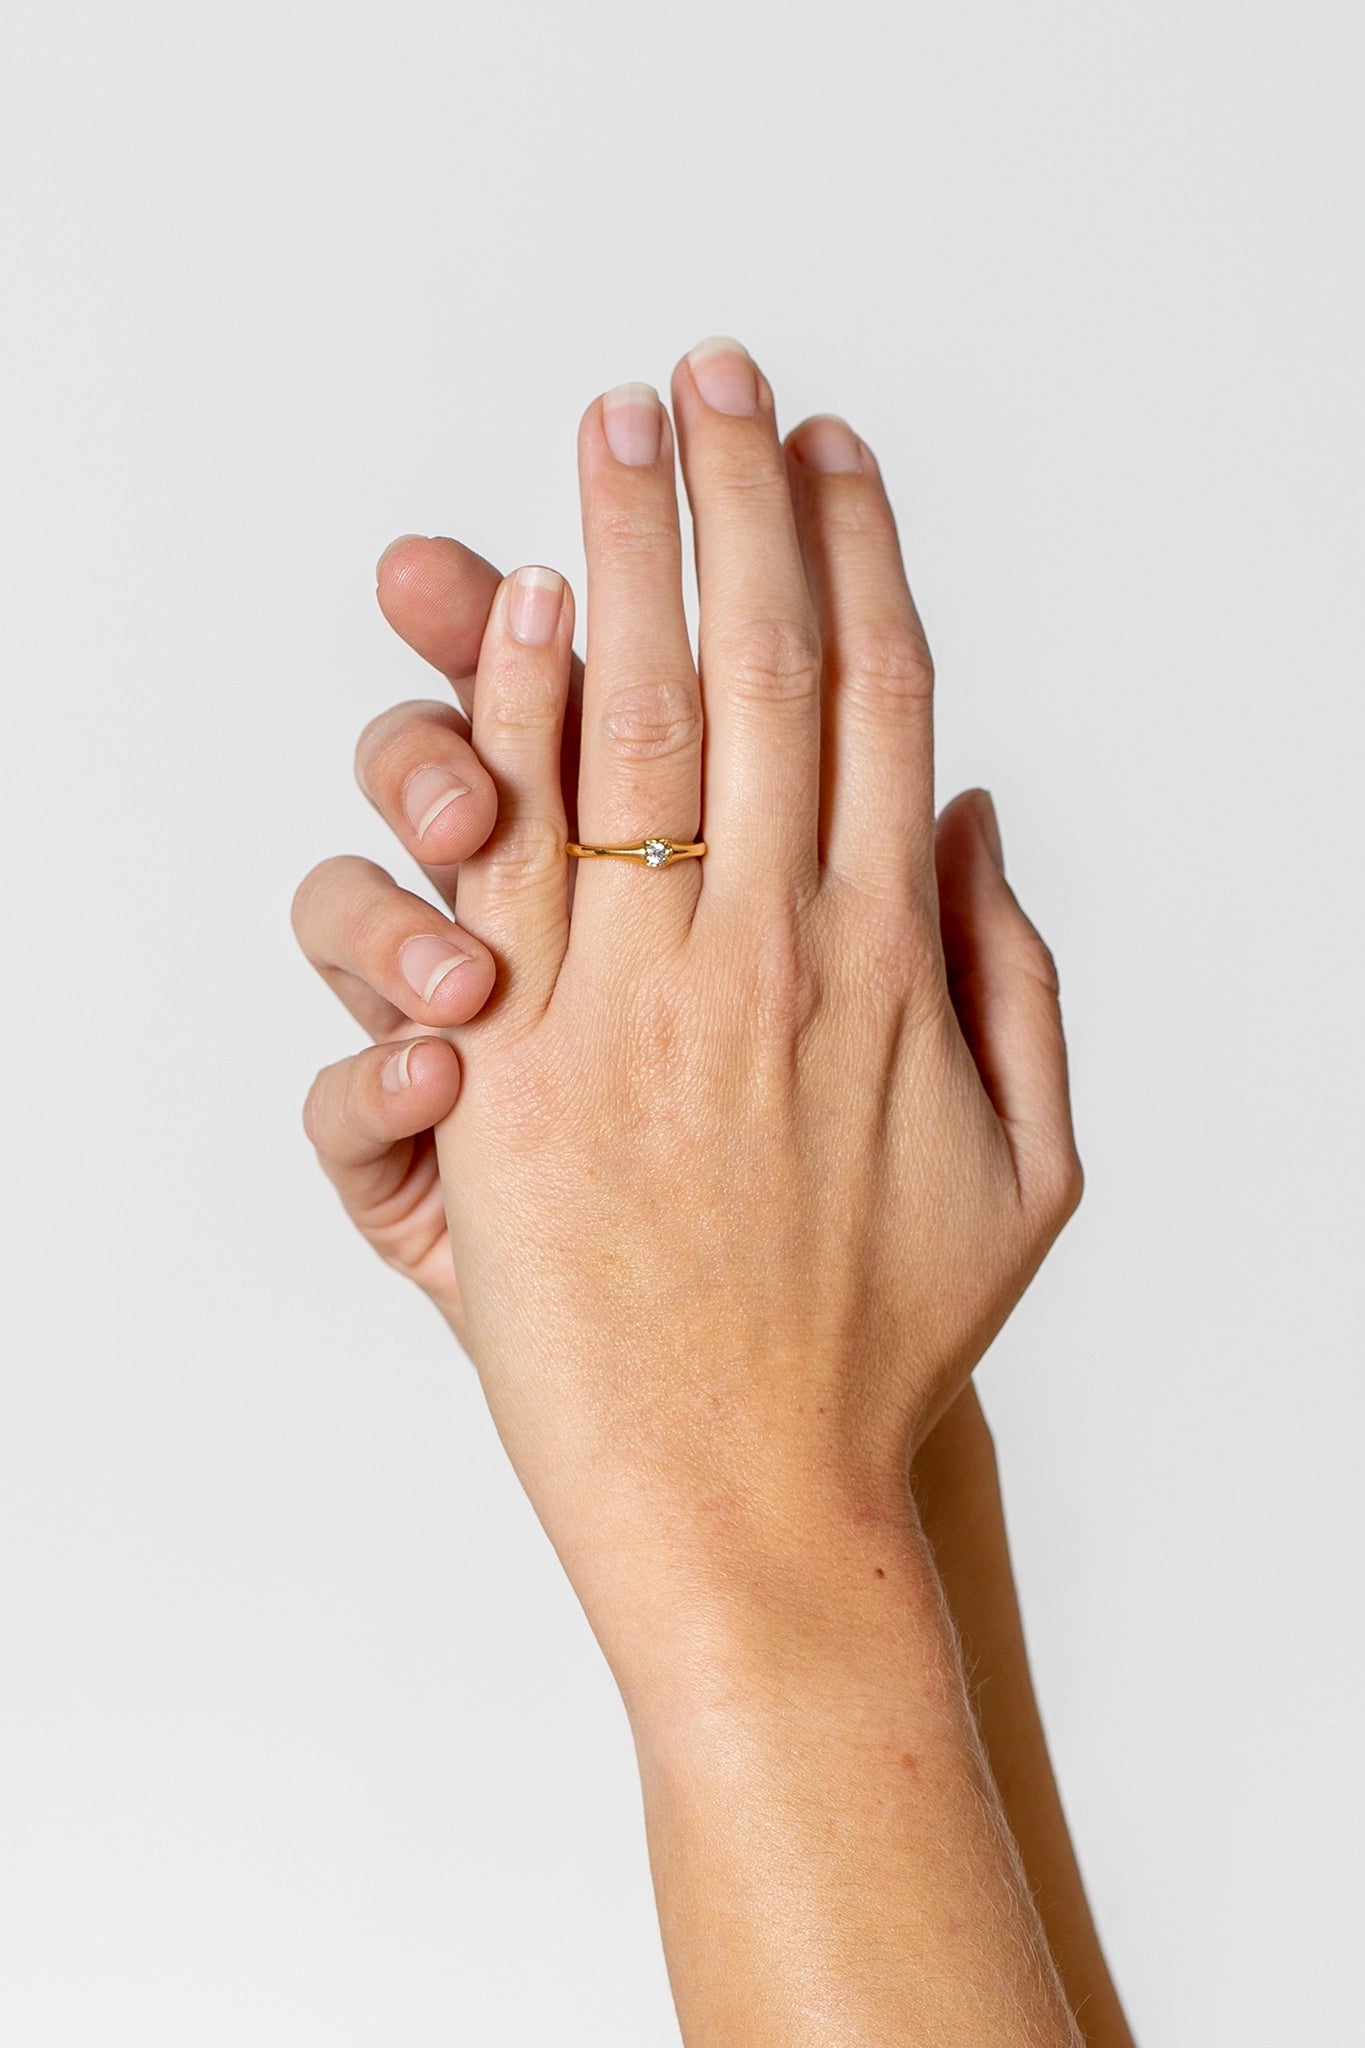 Tragefoto: zwei Hände mit einem goldenen Ring mit einem Brillianten